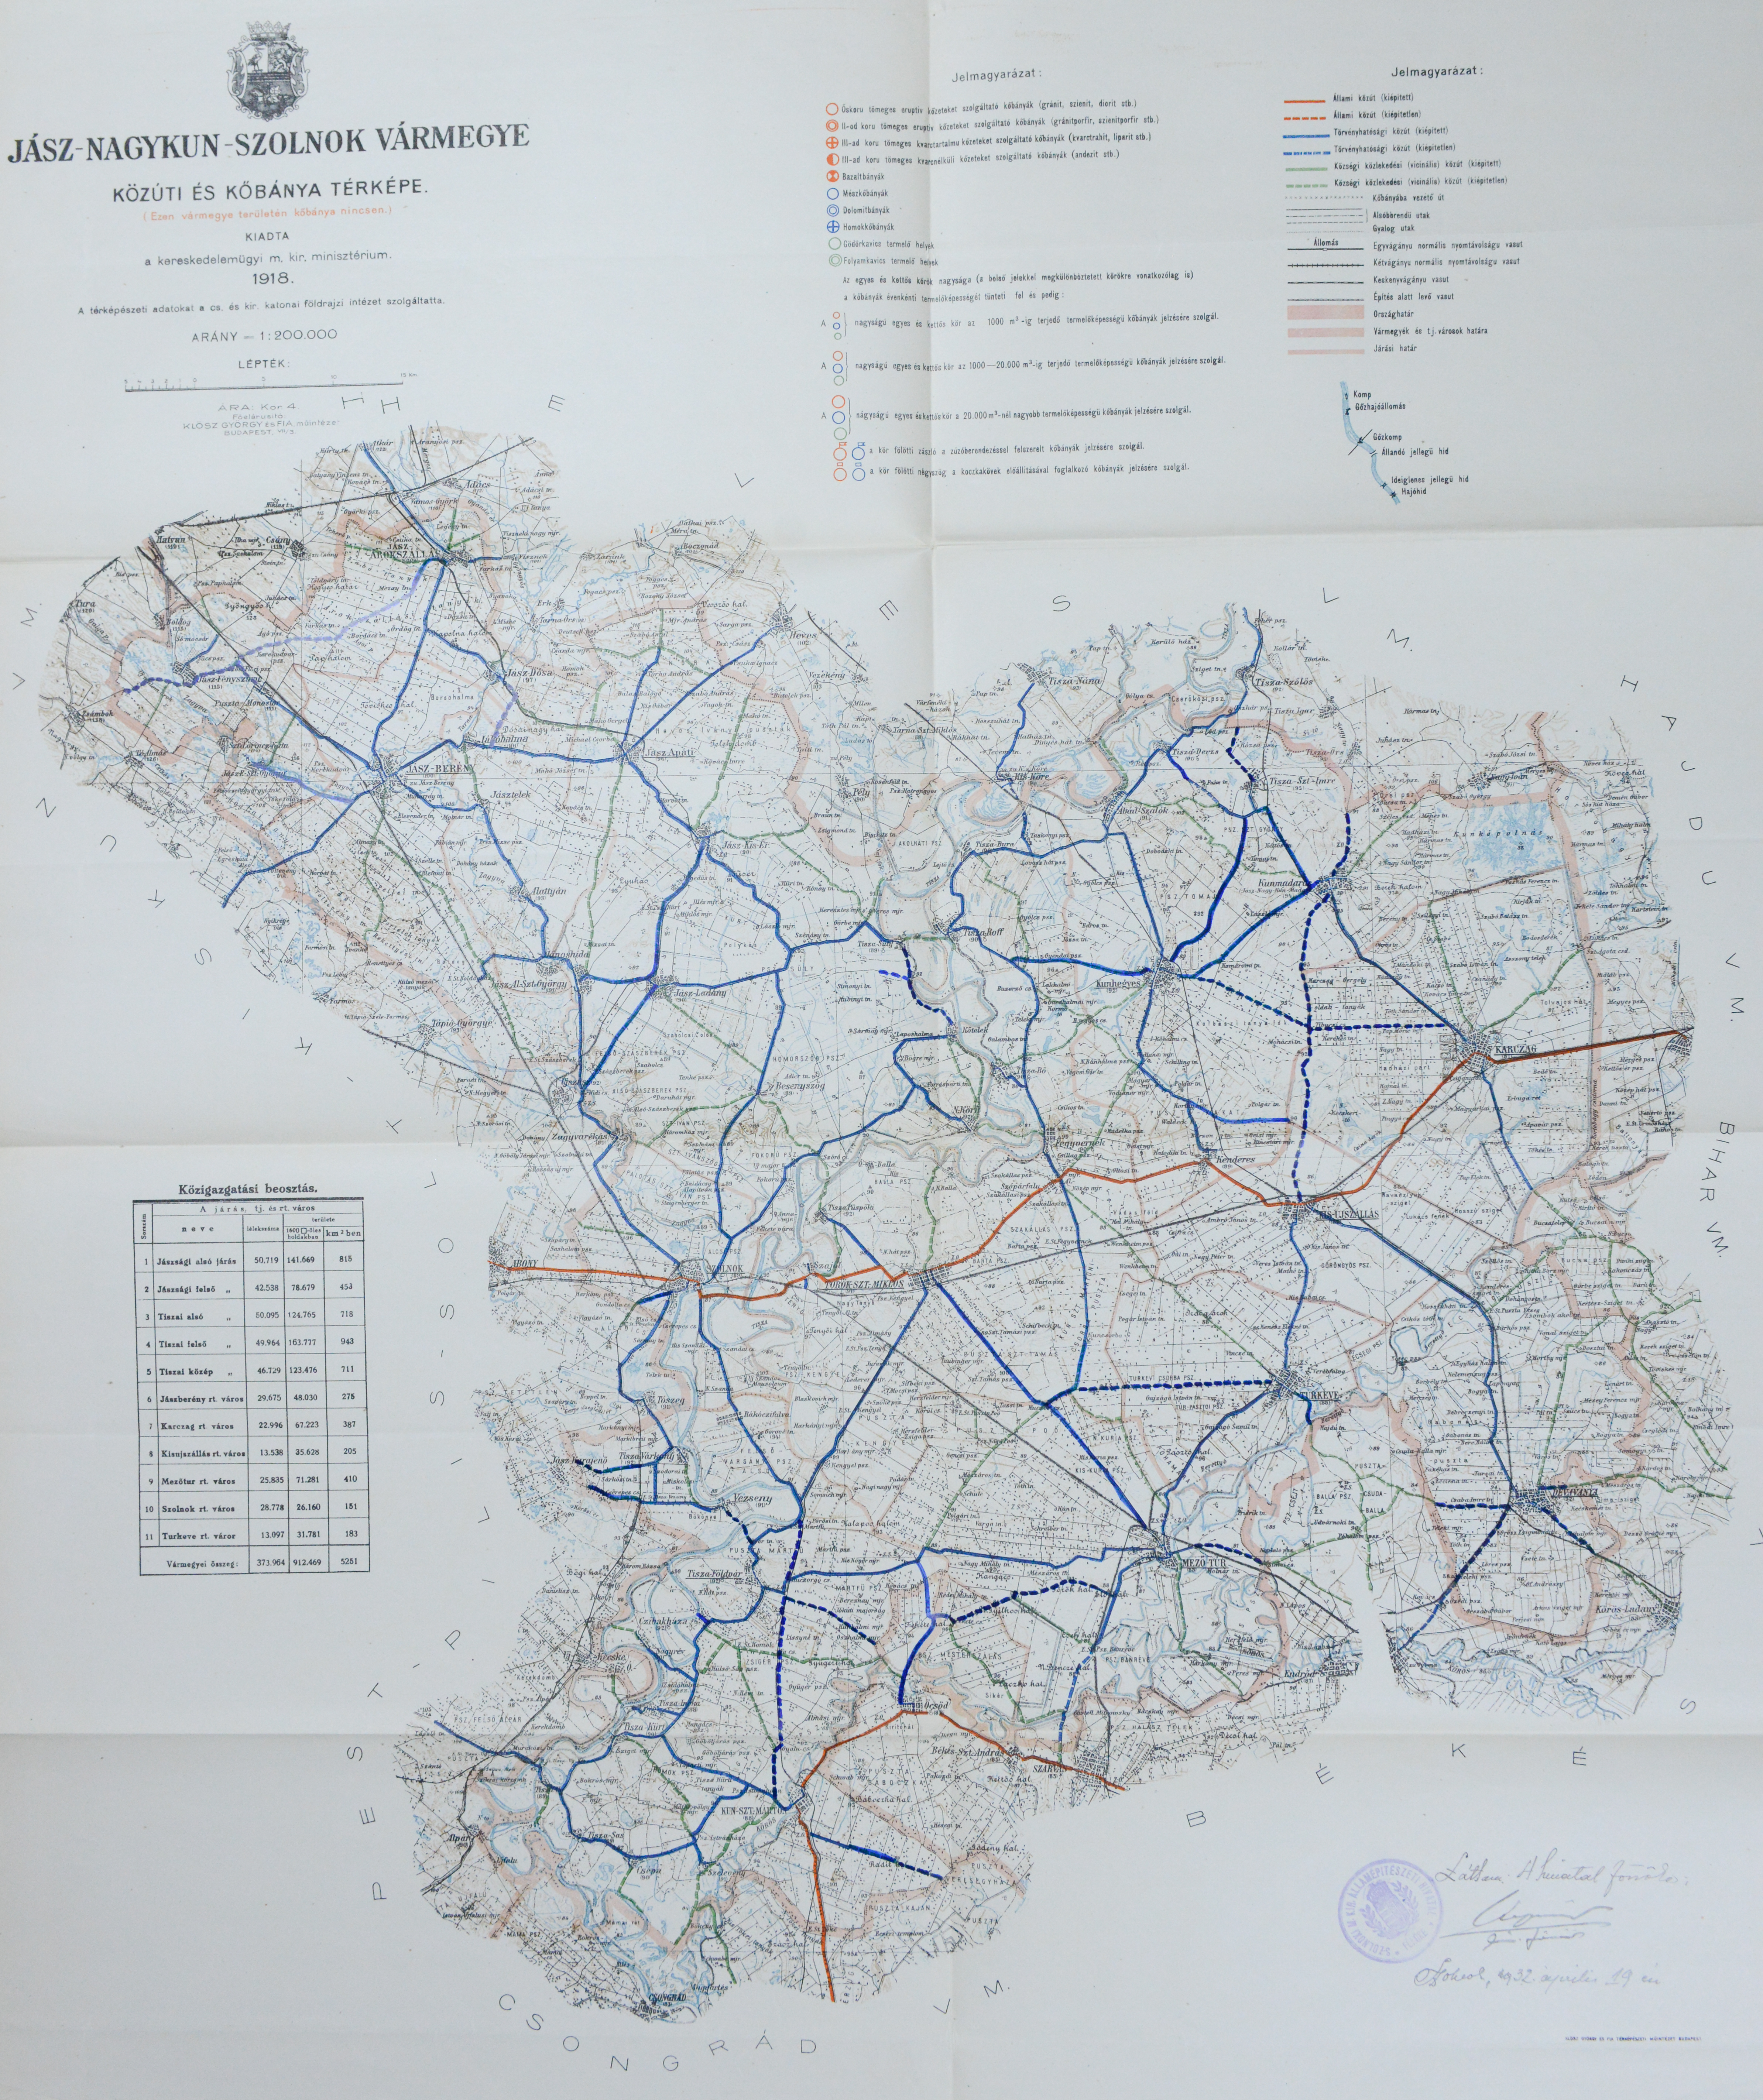 Jász-Nagykun-Szolnok vármegye közúti térképe